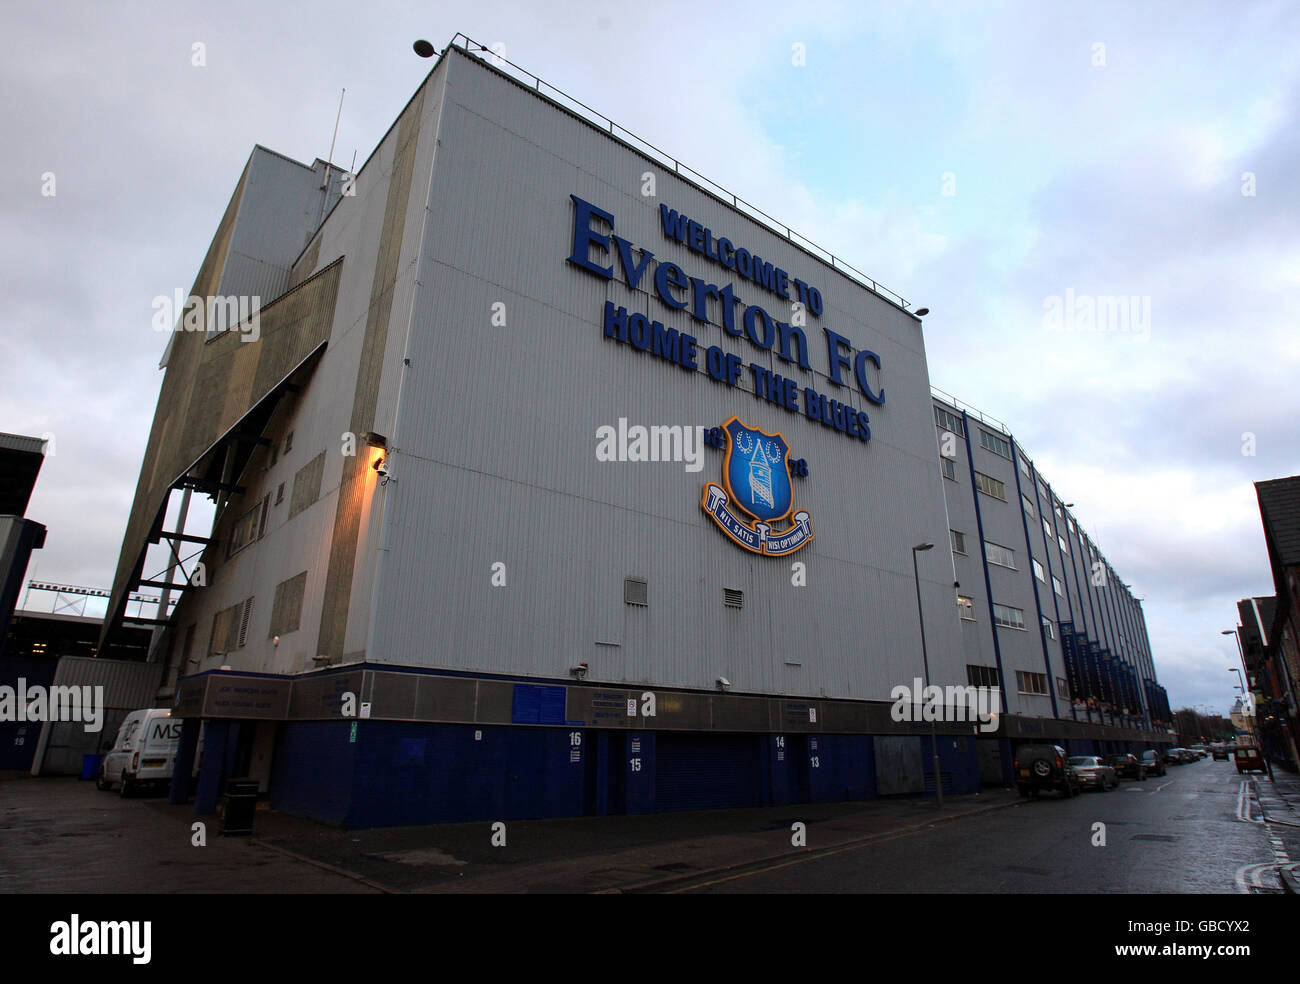 Soccer - Barclays Premier League - Everton - Goodison Park. Goodison Park, home of Everton FC Stock Photo